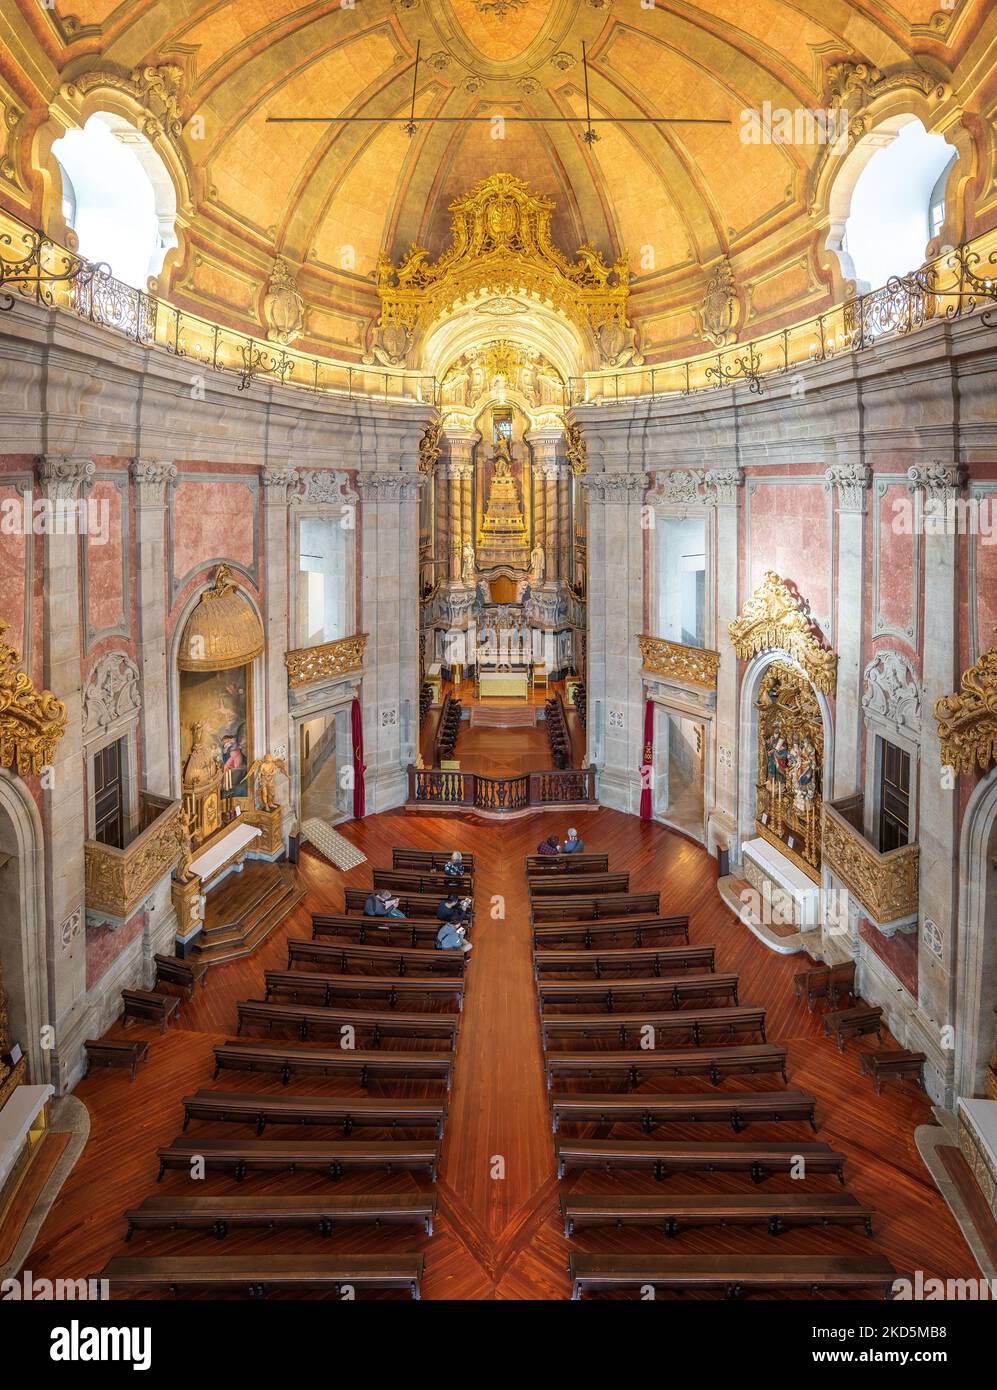 Vista de alto ángulo del Altar y el pasillo principal en el interior de la Iglesia de los Clerigos - Oporto, Portugal Foto de stock